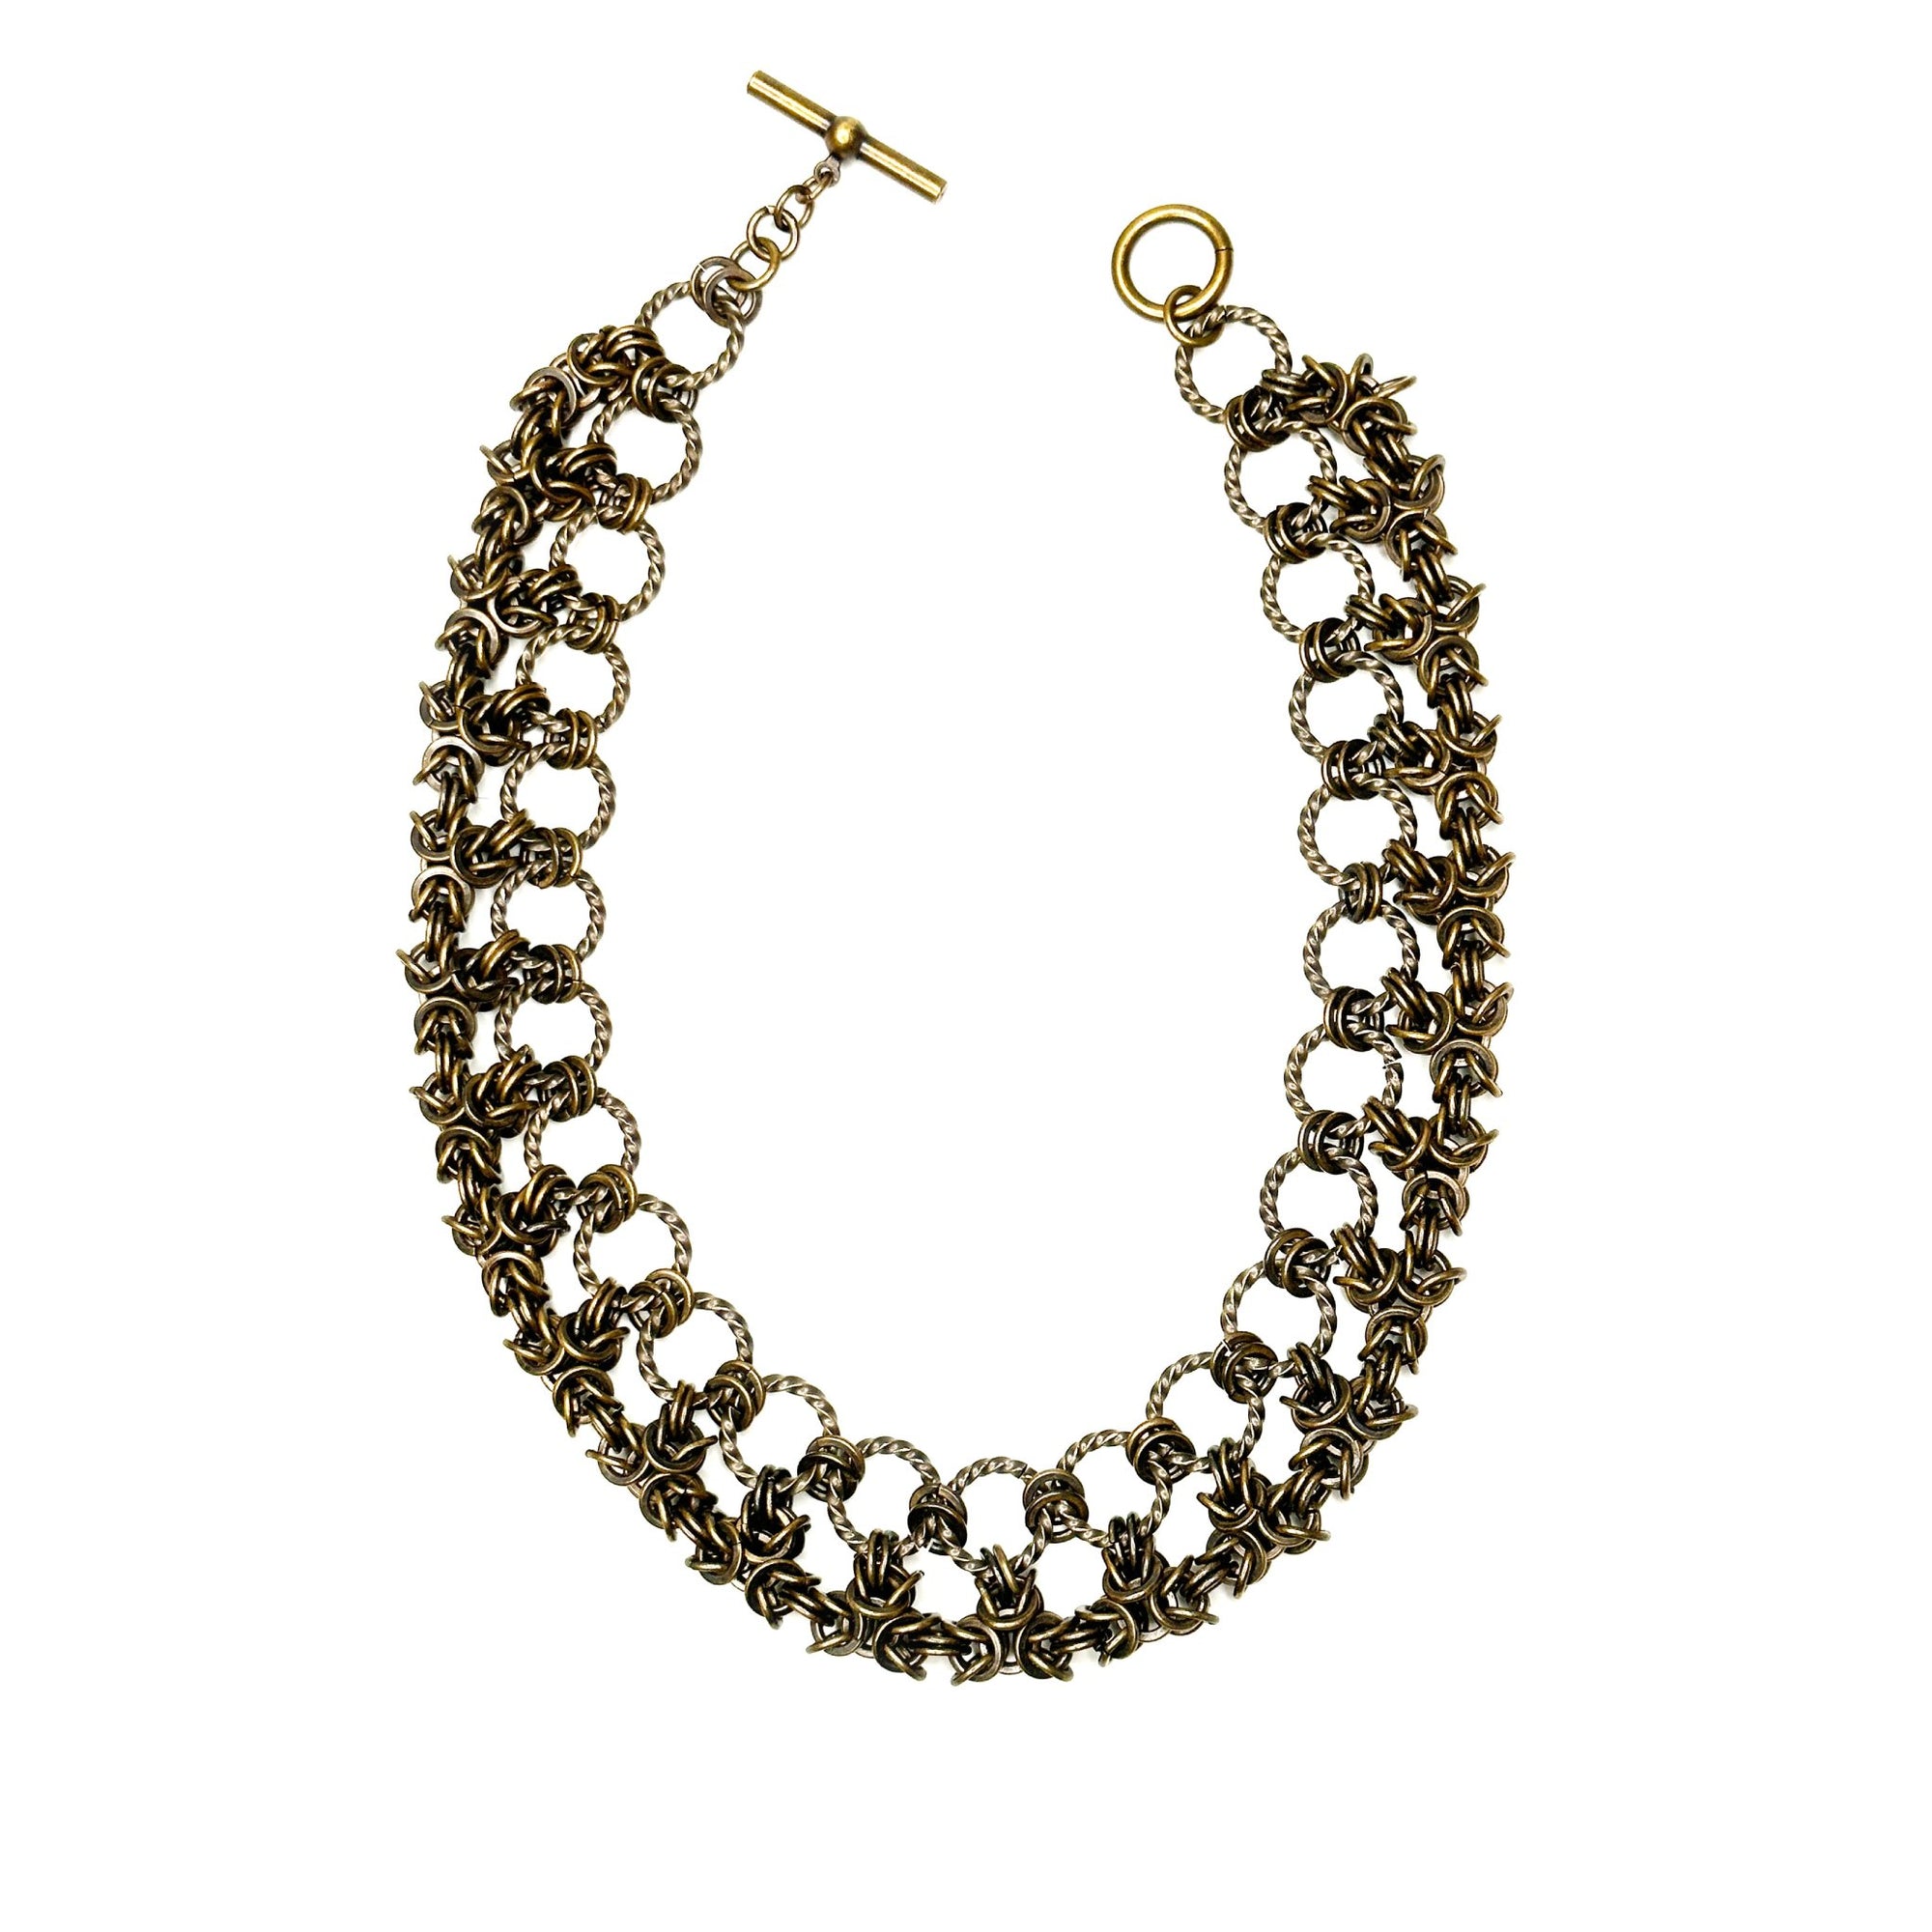 Antique Brass Byzantine Chain Necklace | Erica Zap Designs